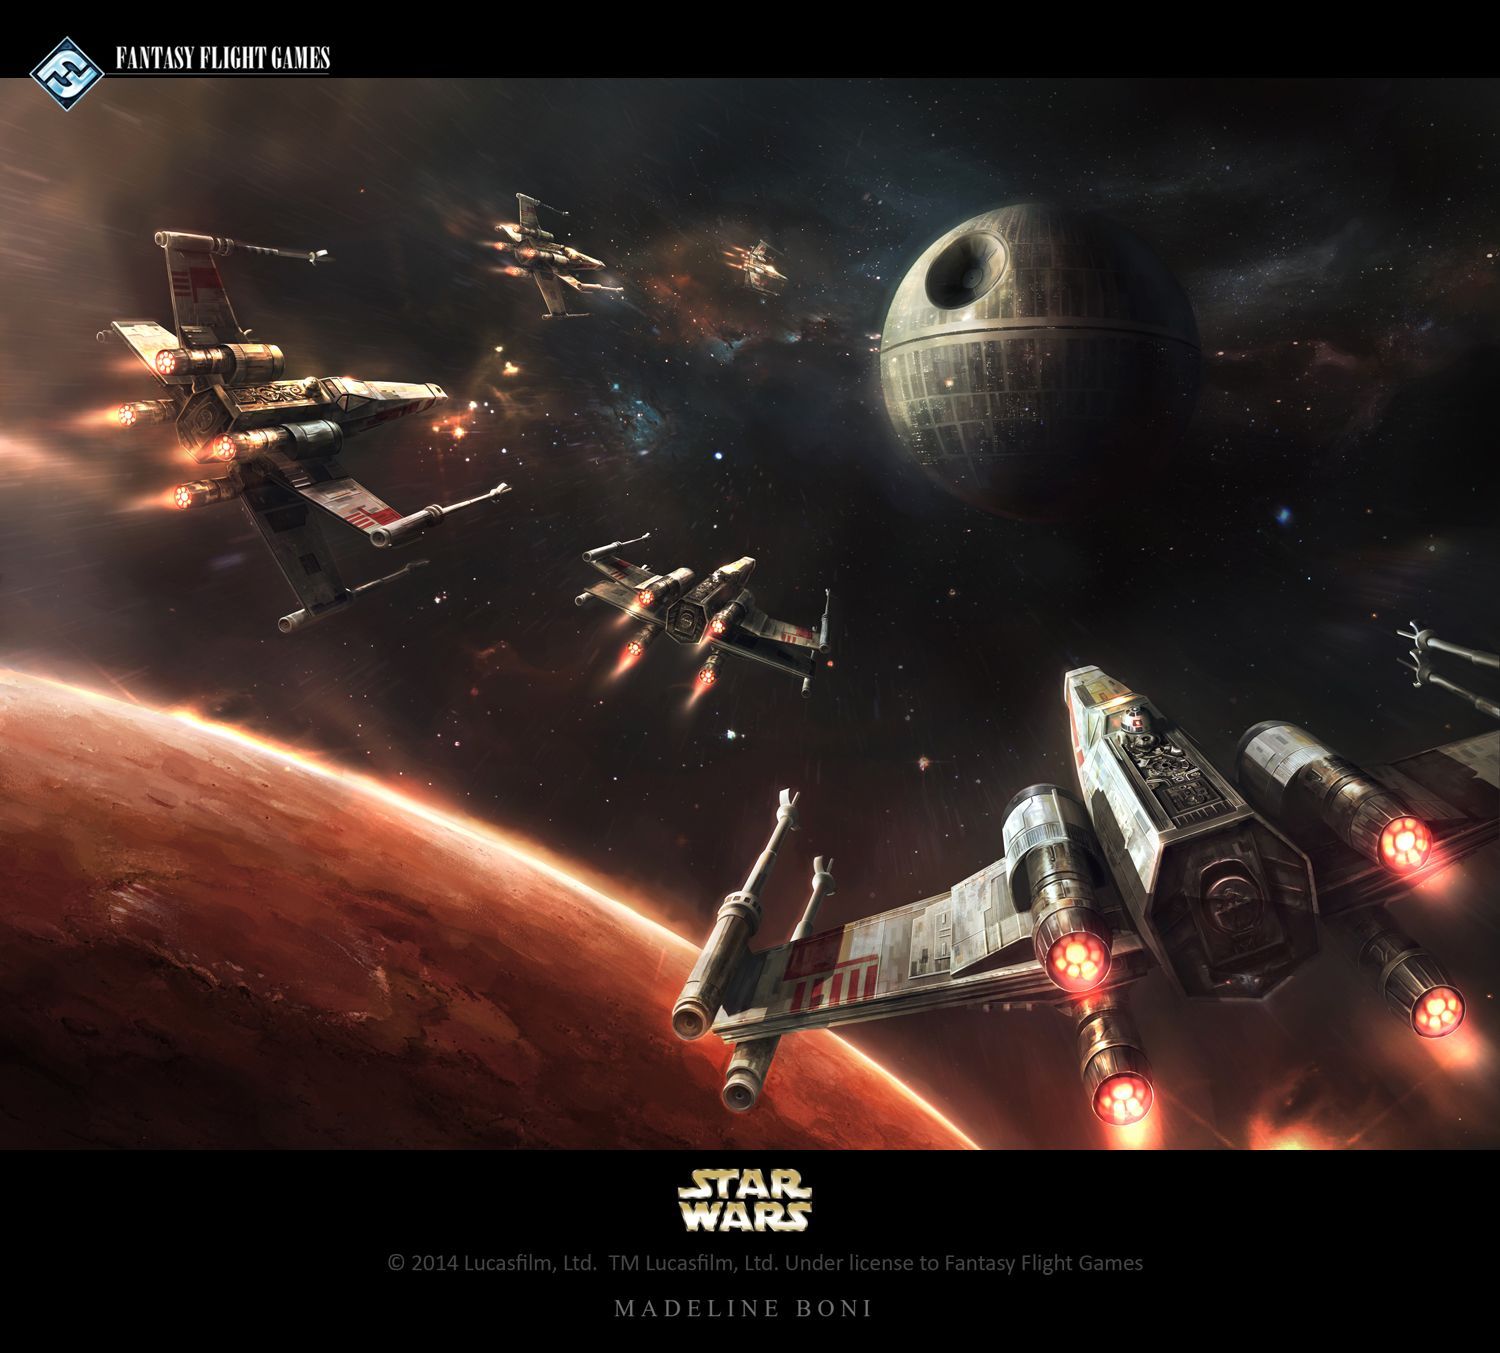 The Defense of Yavin 4. Star wars wallpaper, Star wars fan art, Star wars ships